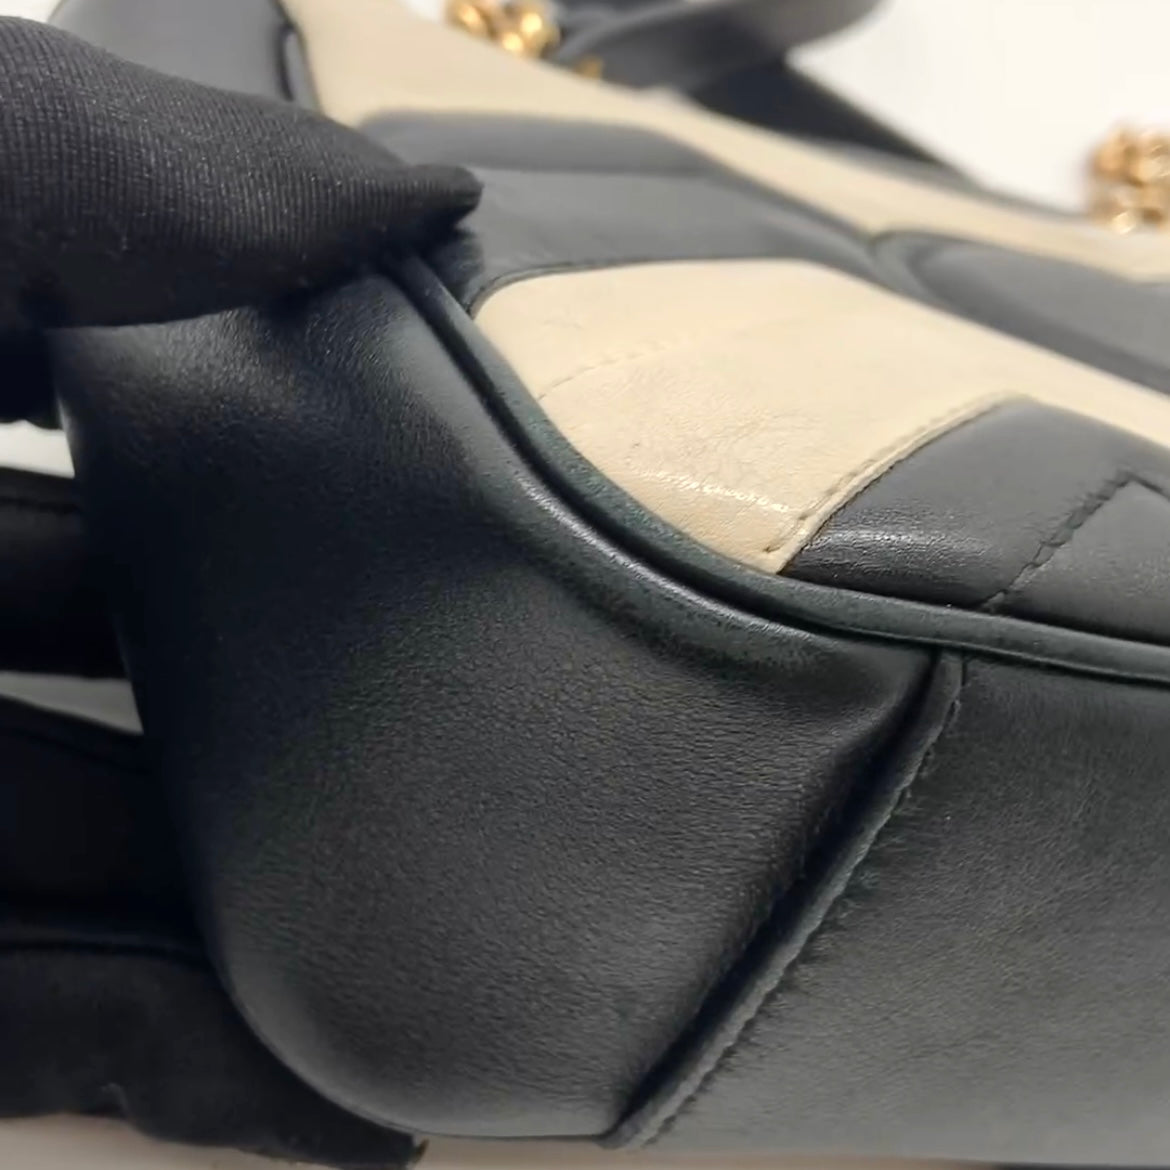 Preloved Gucci GG Marmont Shoulder Bag Mini